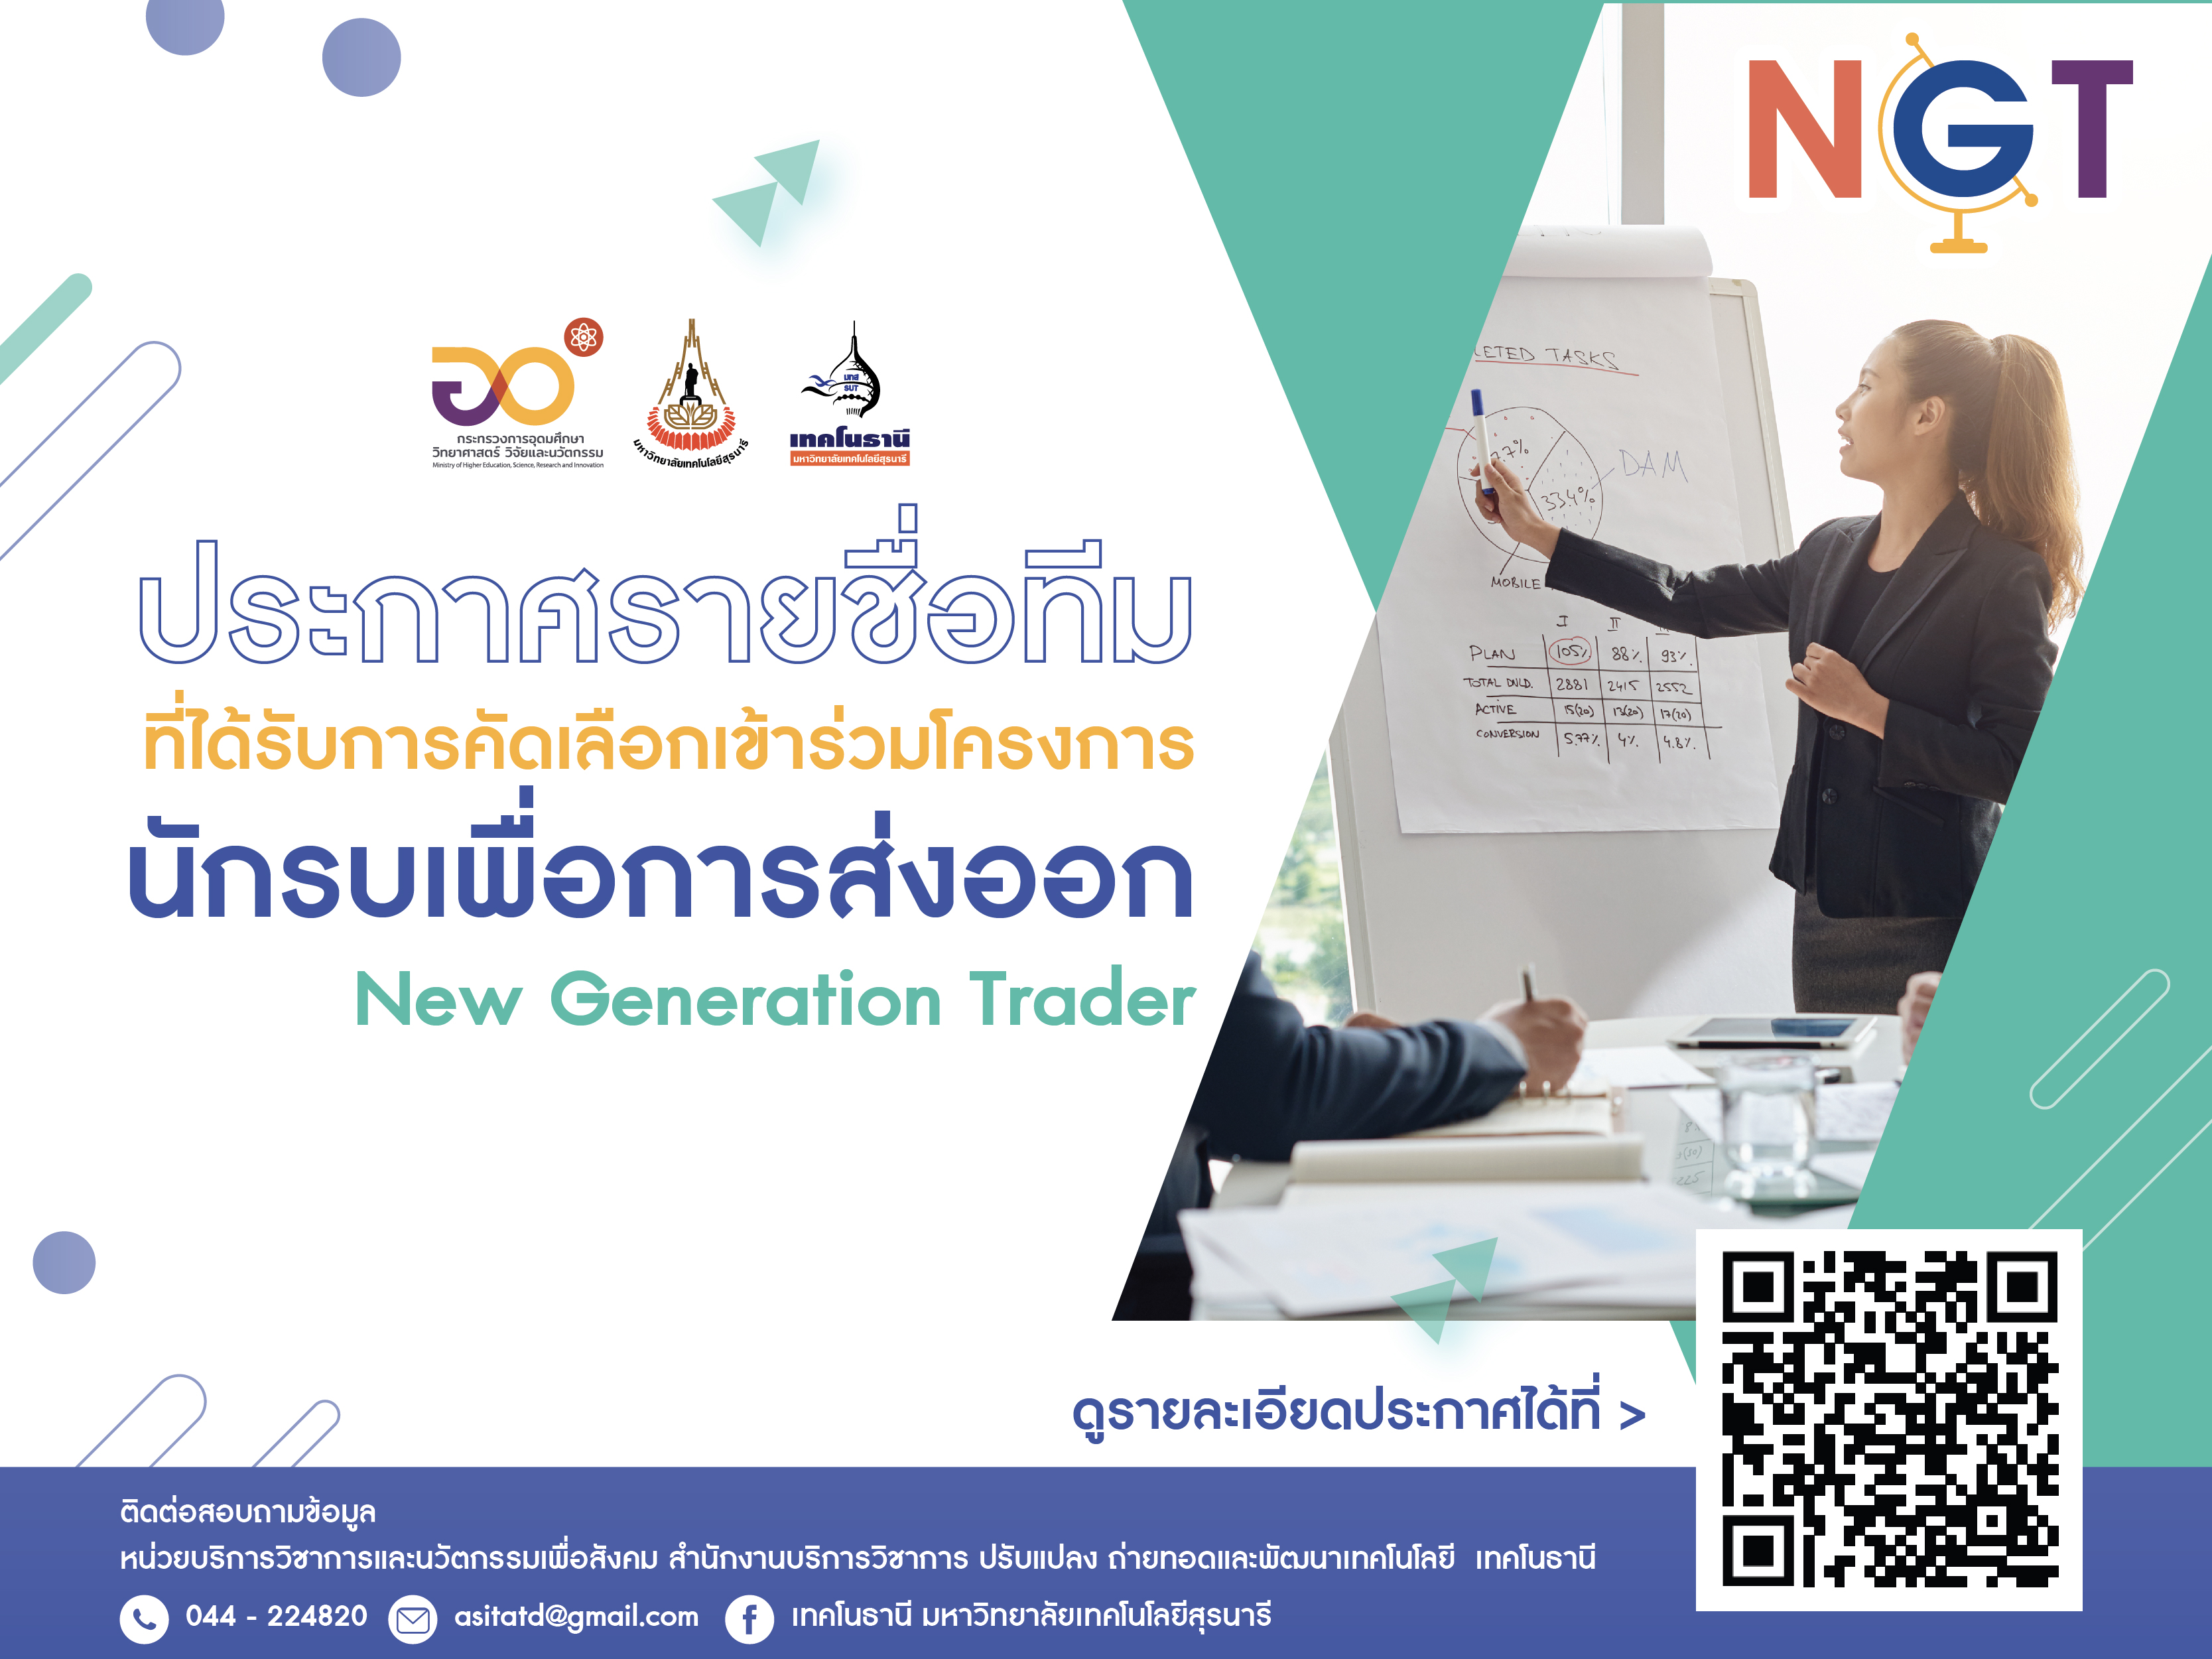 โครงการนักรบเพื่อการส่งออก (New Generation Trader : NGT)